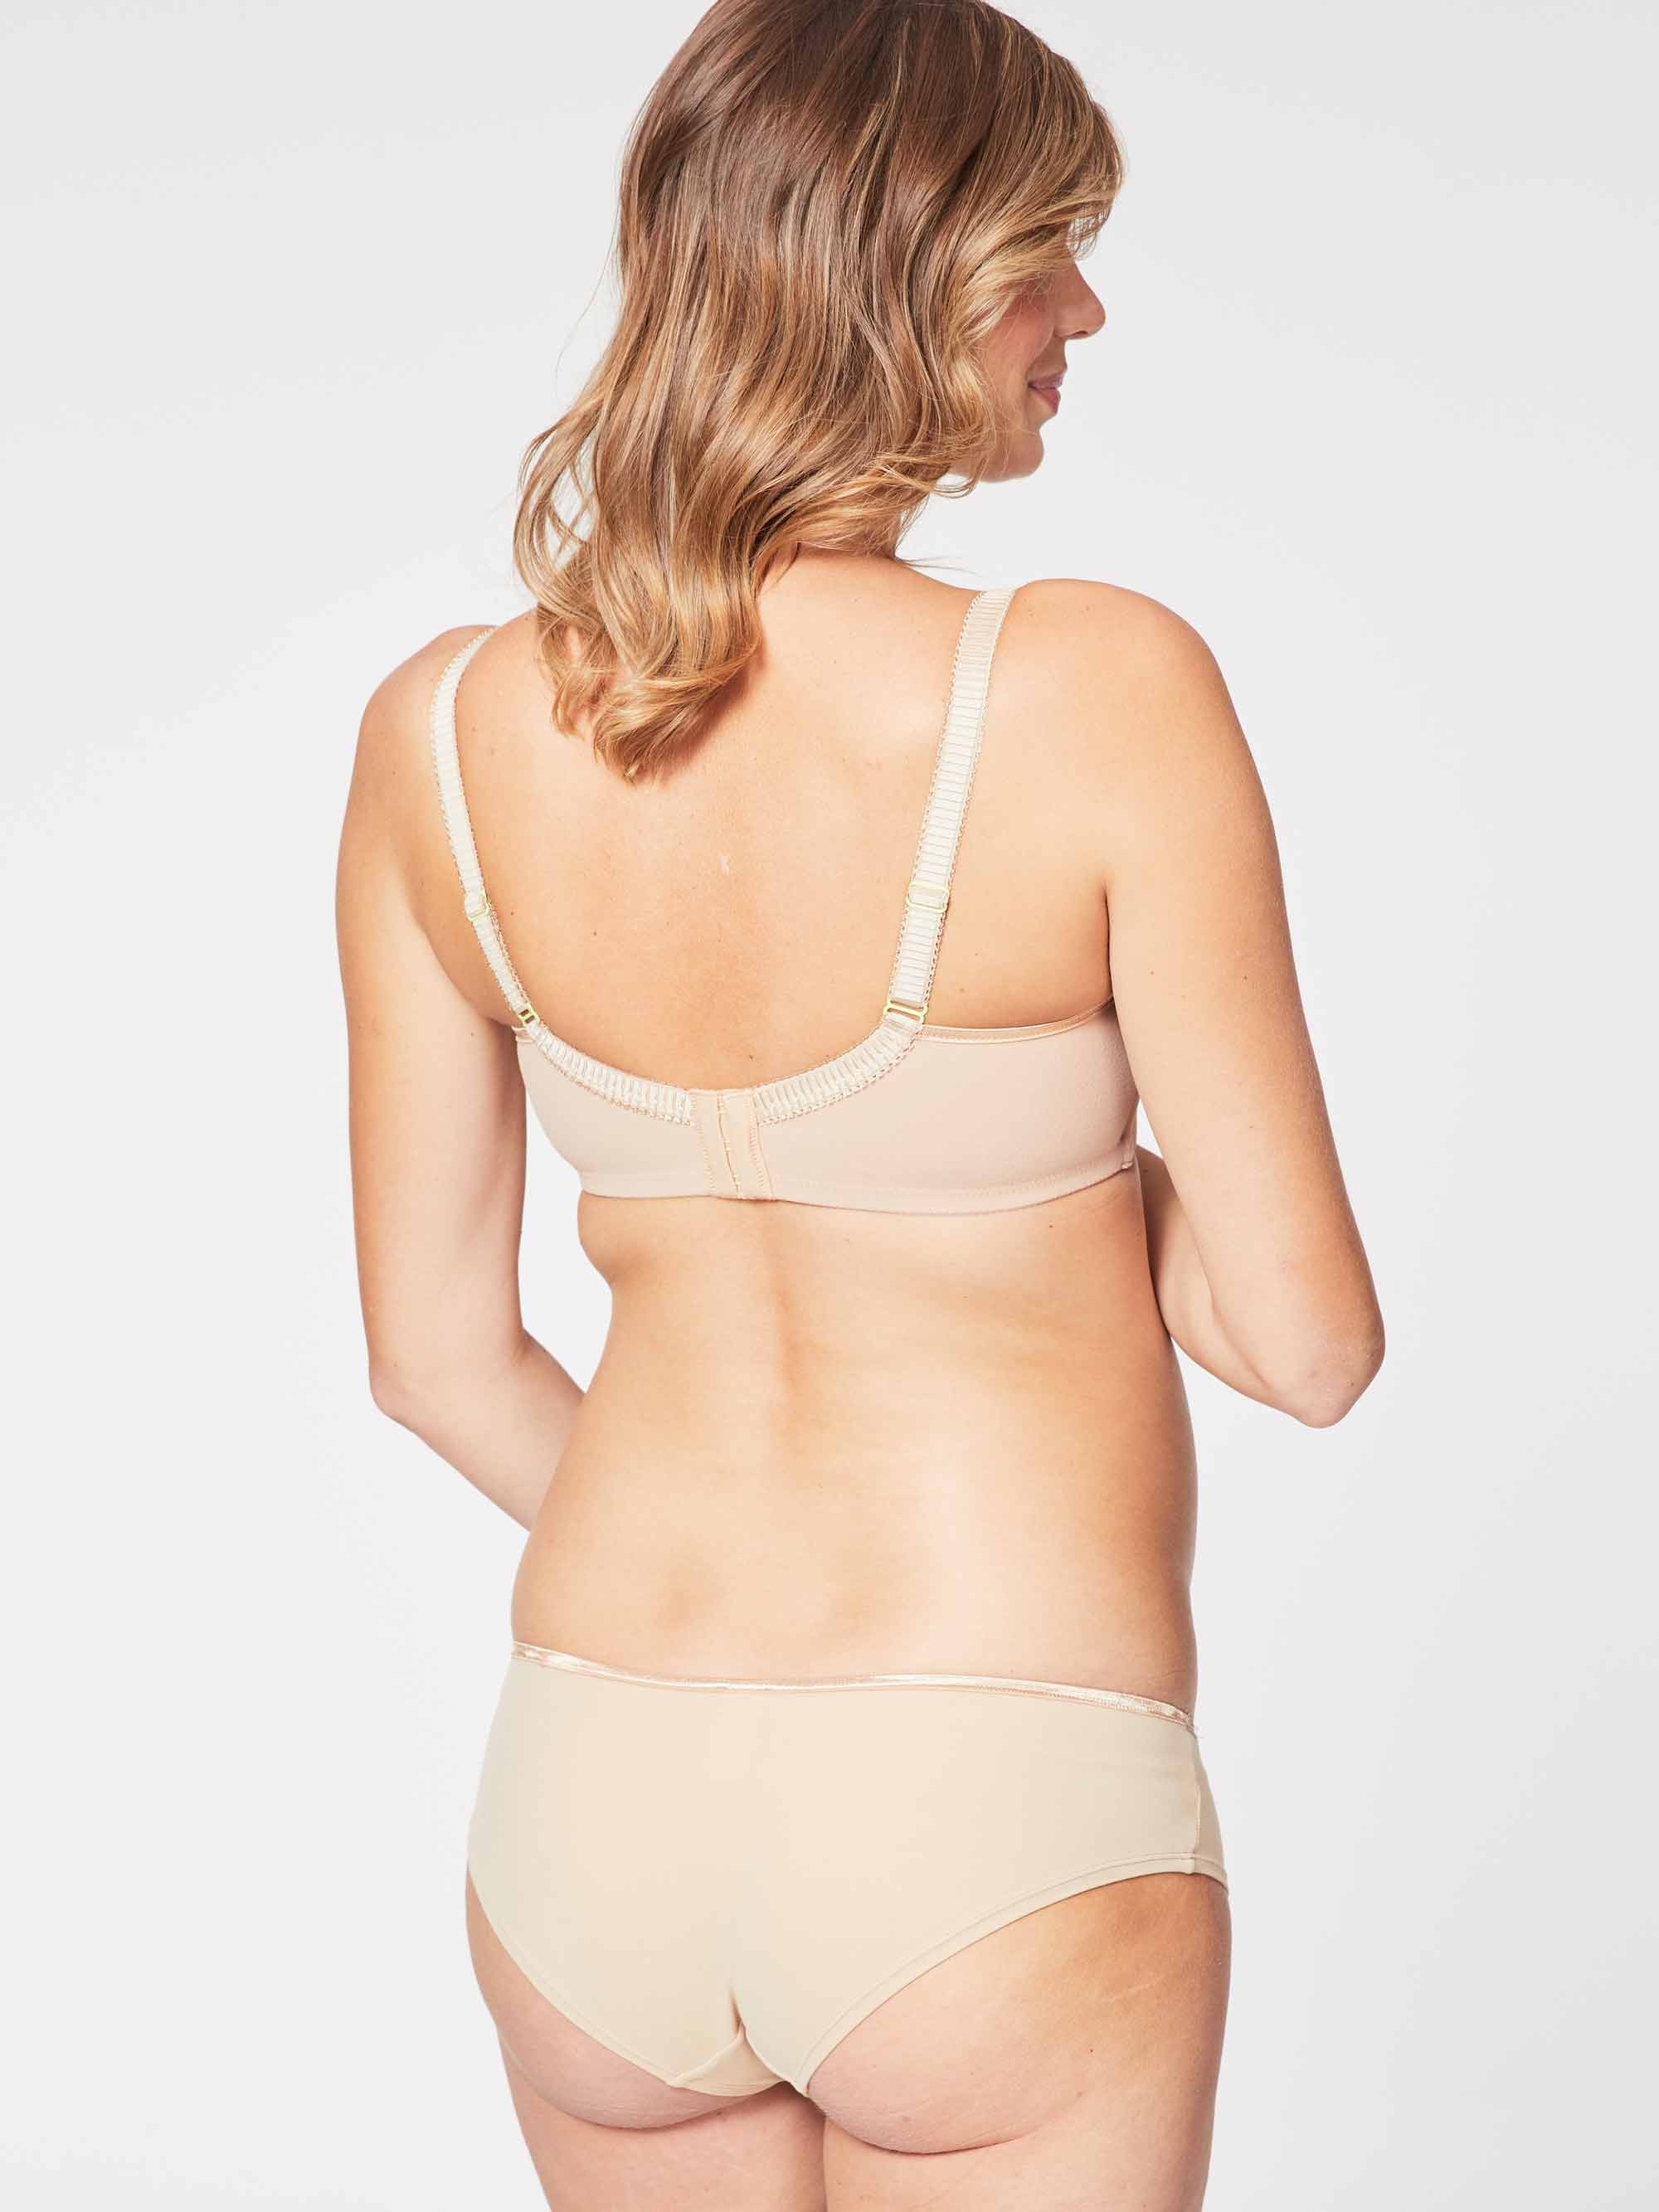 Nursing Bra Underwire Support Padded Women's Bra Breastfeeding Underwear  (Color : Beige, Size : 36F)